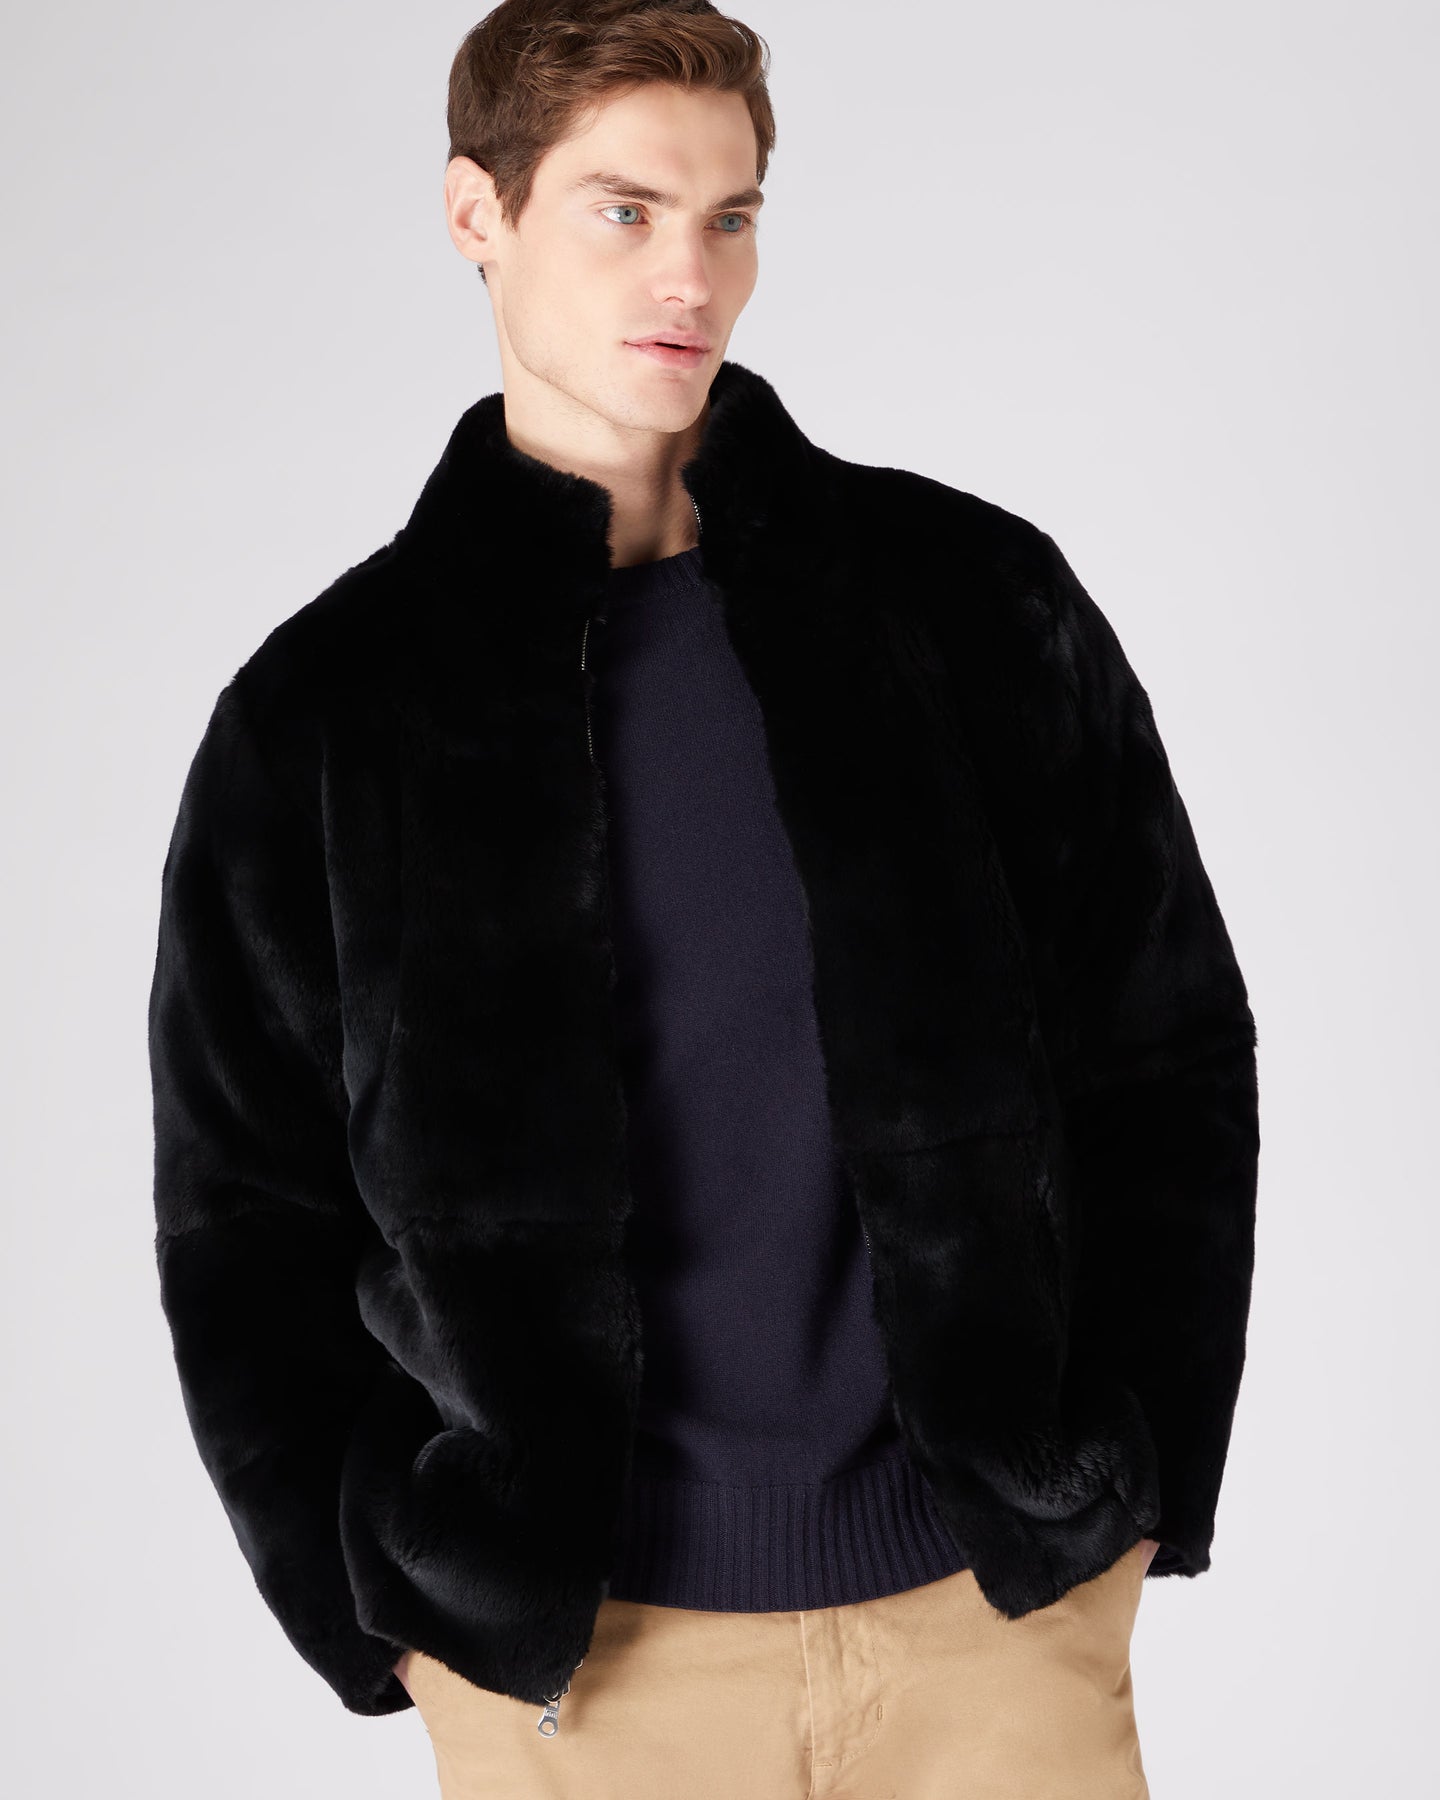 Men's Sweater Coat Faux Fur Wool Sweater Jackets Zipper Knitted